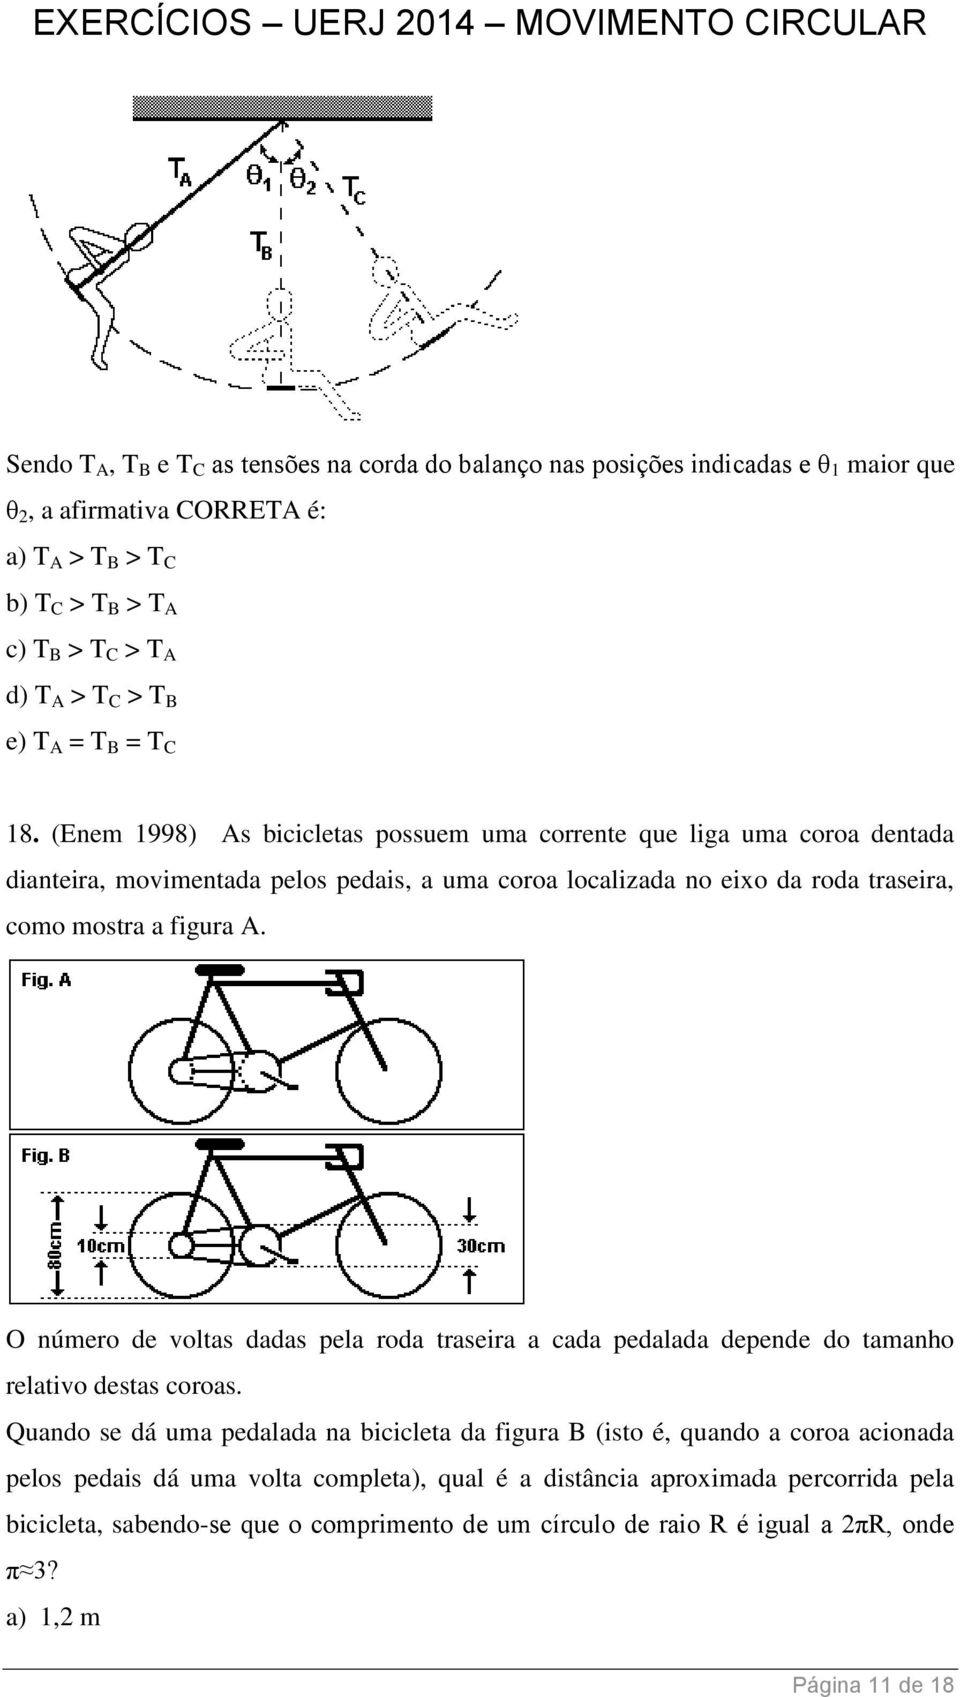 (Enem 1998) As bicicletas possuem uma corrente que liga uma coroa dentada dianteira, movimentada pelos pedais, a uma coroa localizada no eixo da roda traseira, como mostra a figura A.